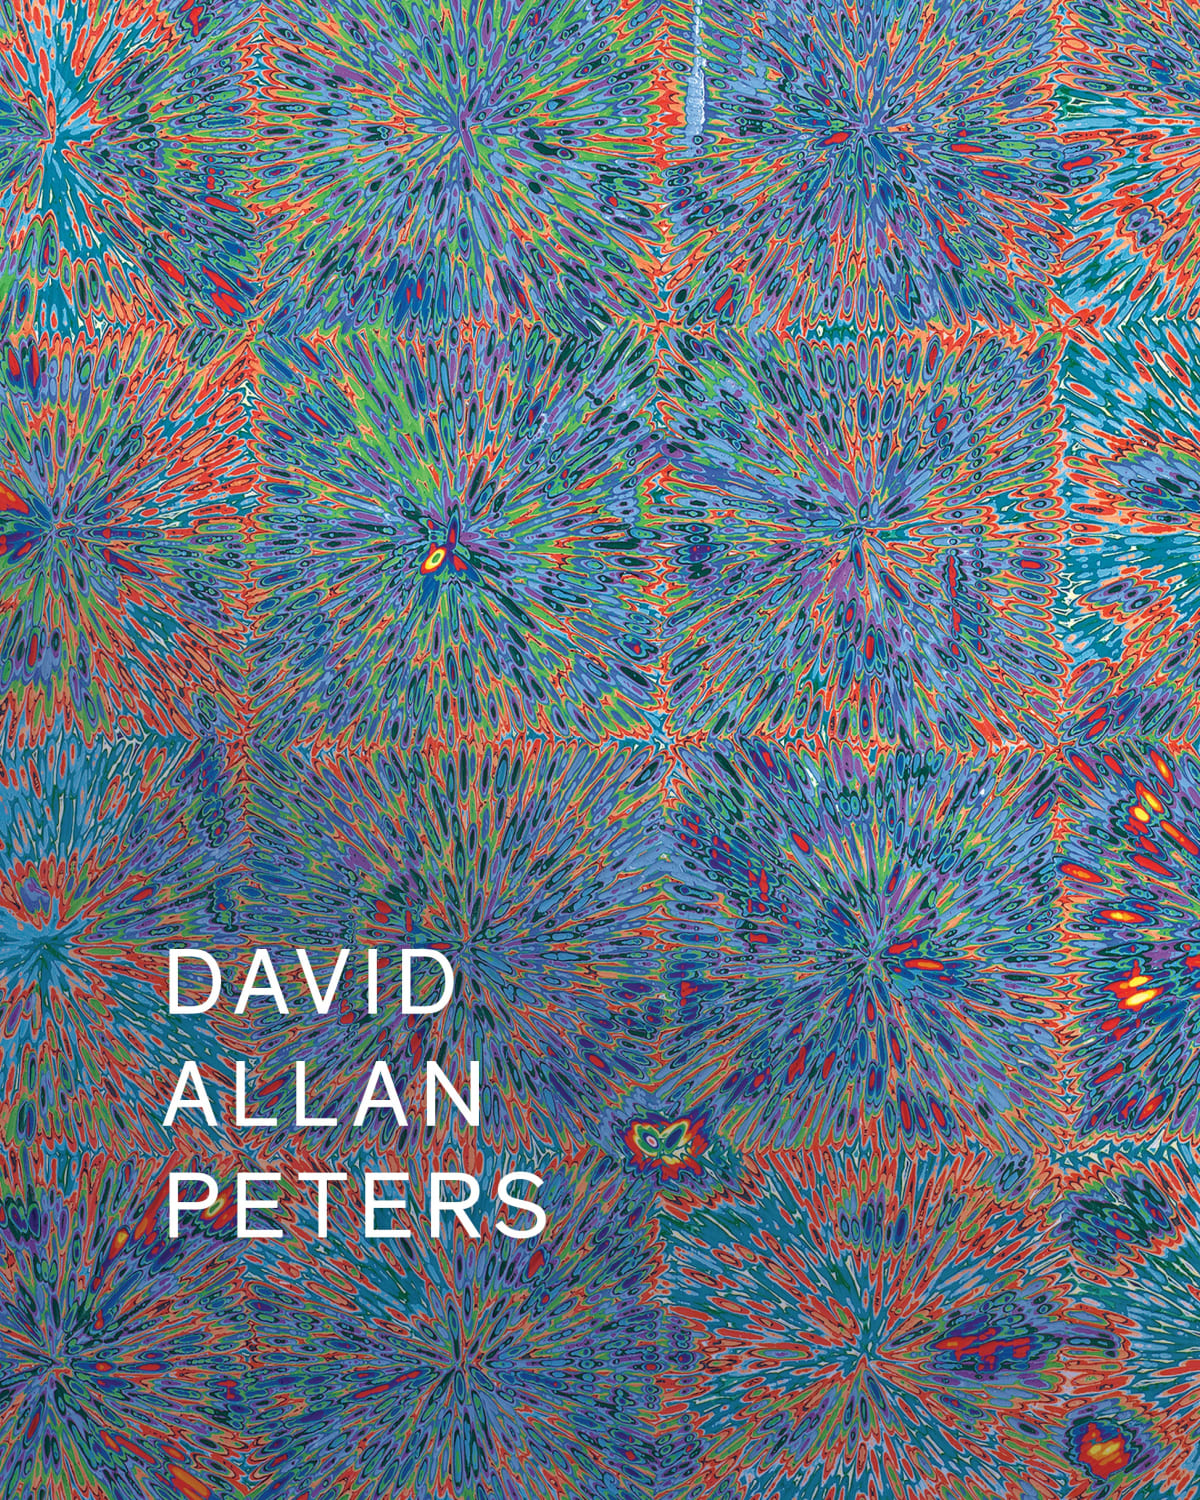 David Allan Peters